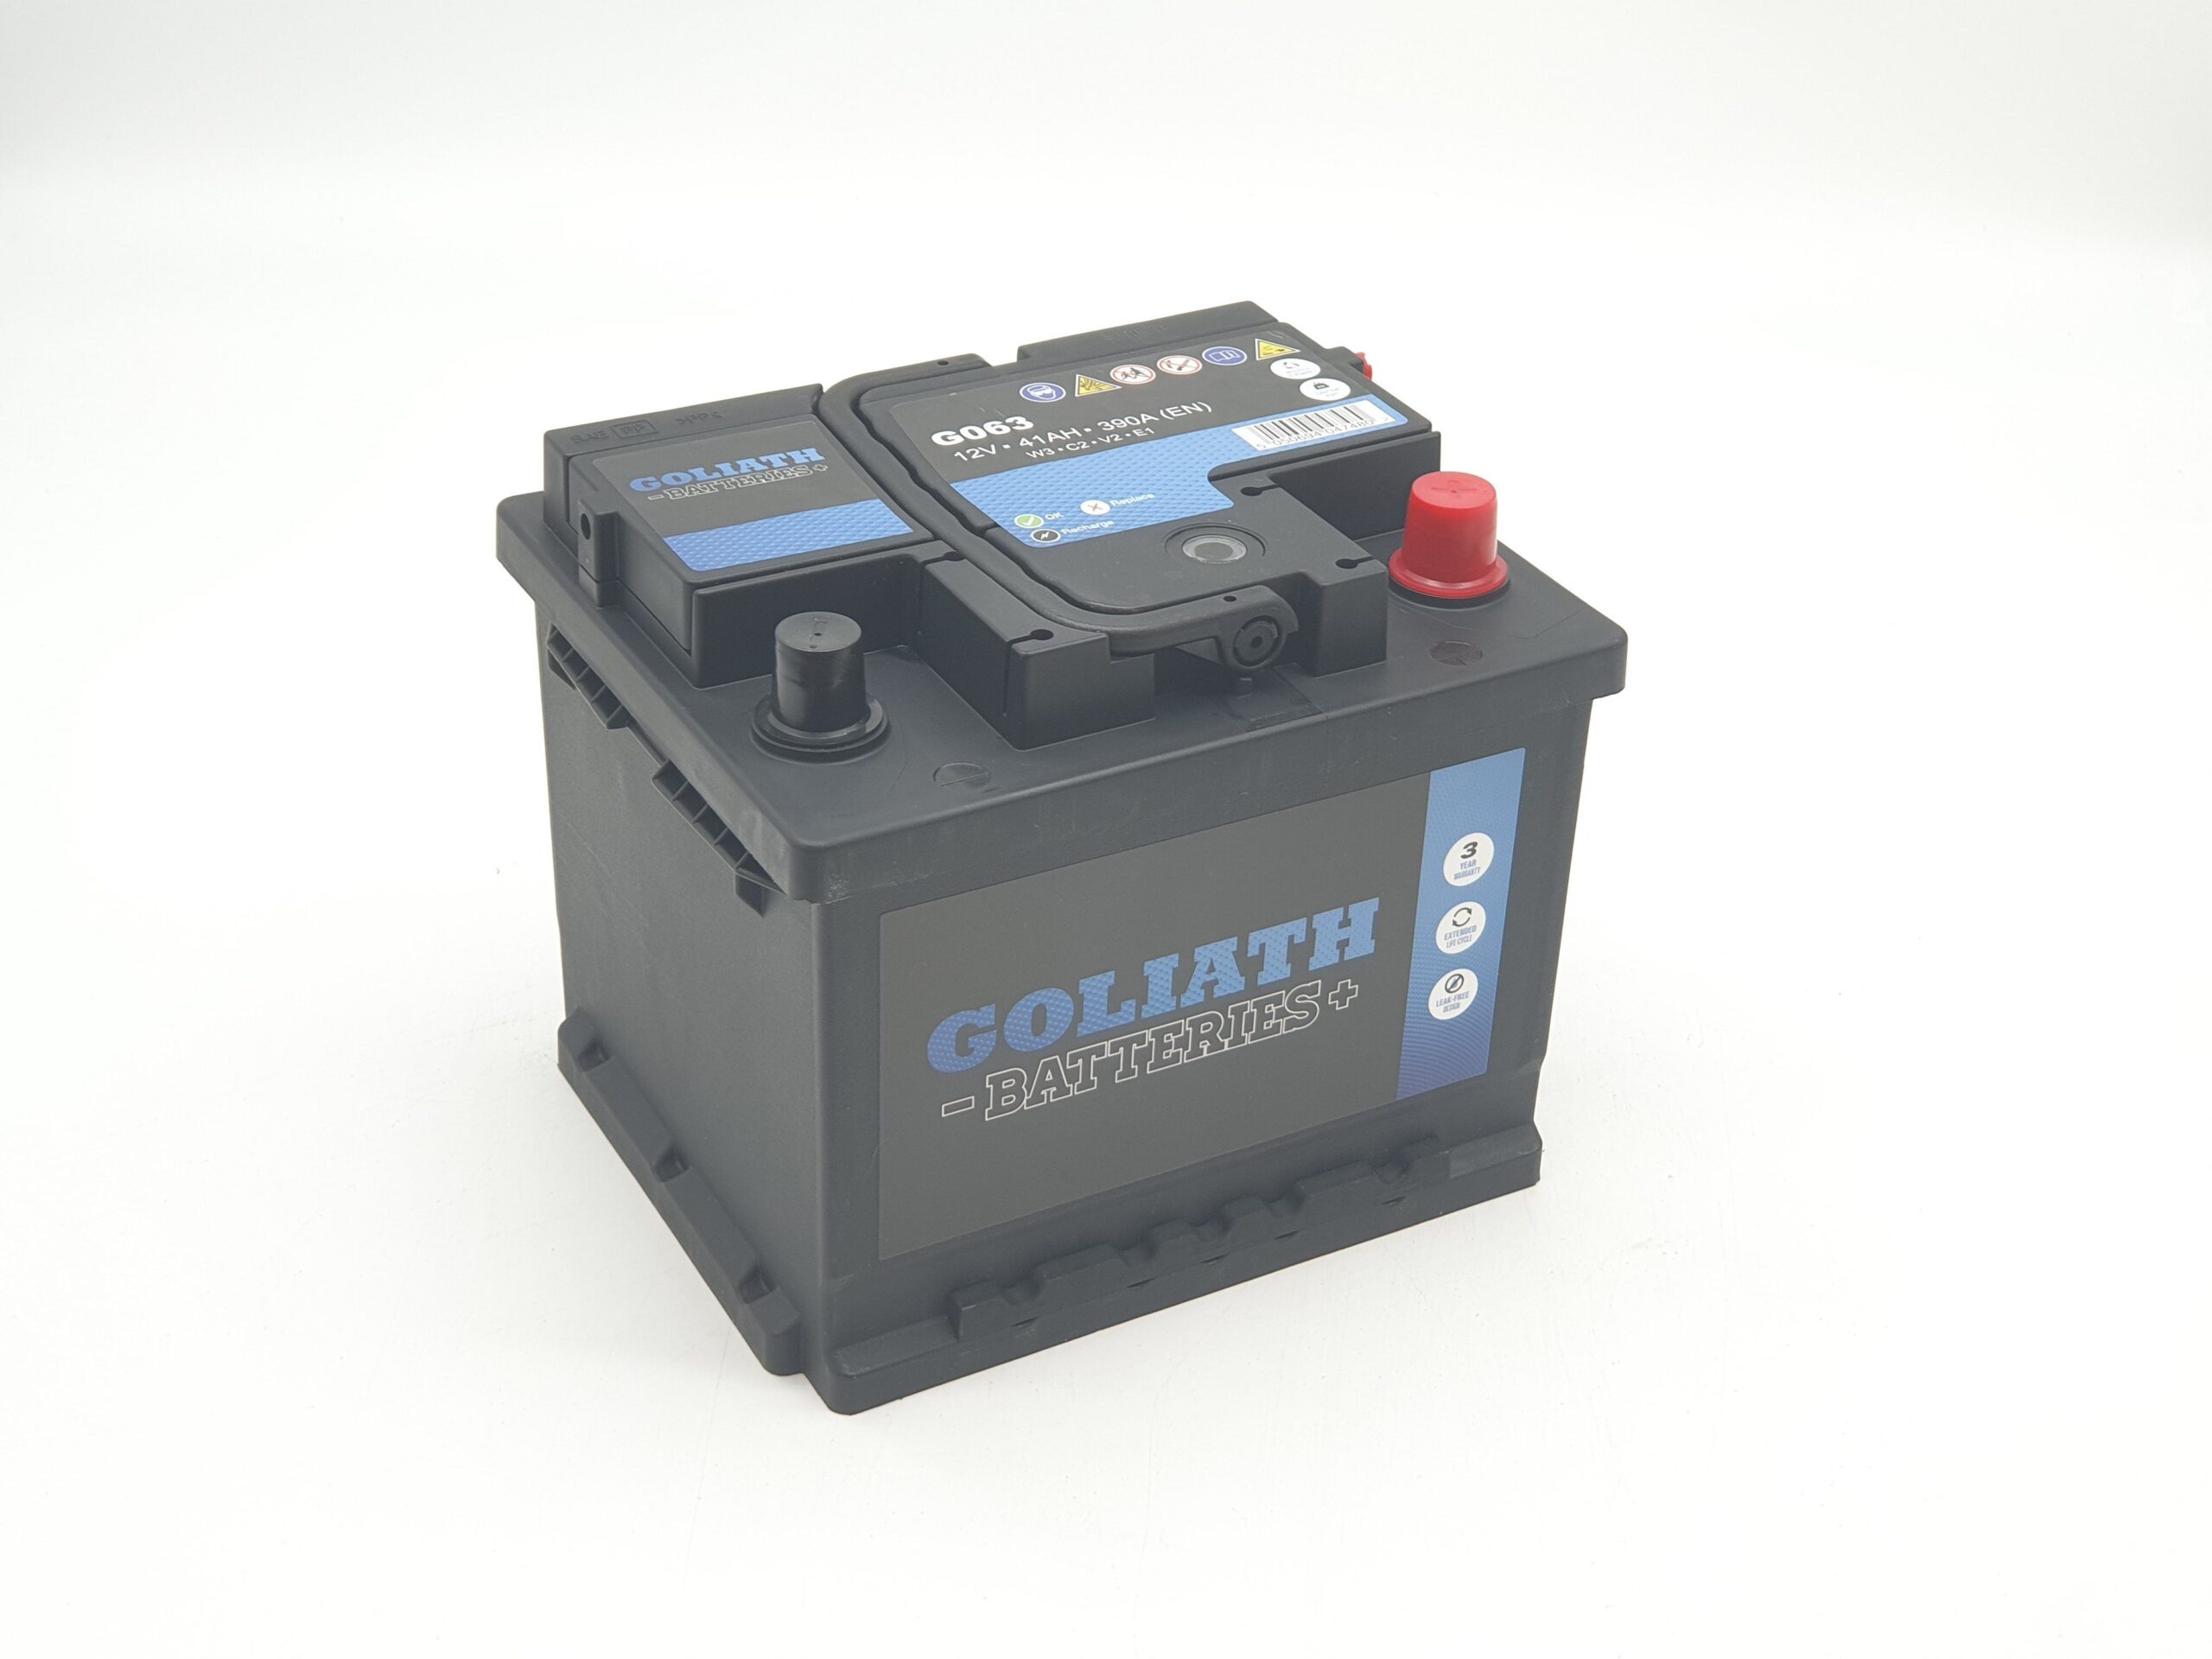 Goliath G063 – 063 41Ah 390A Battery – 3 Year Warranty